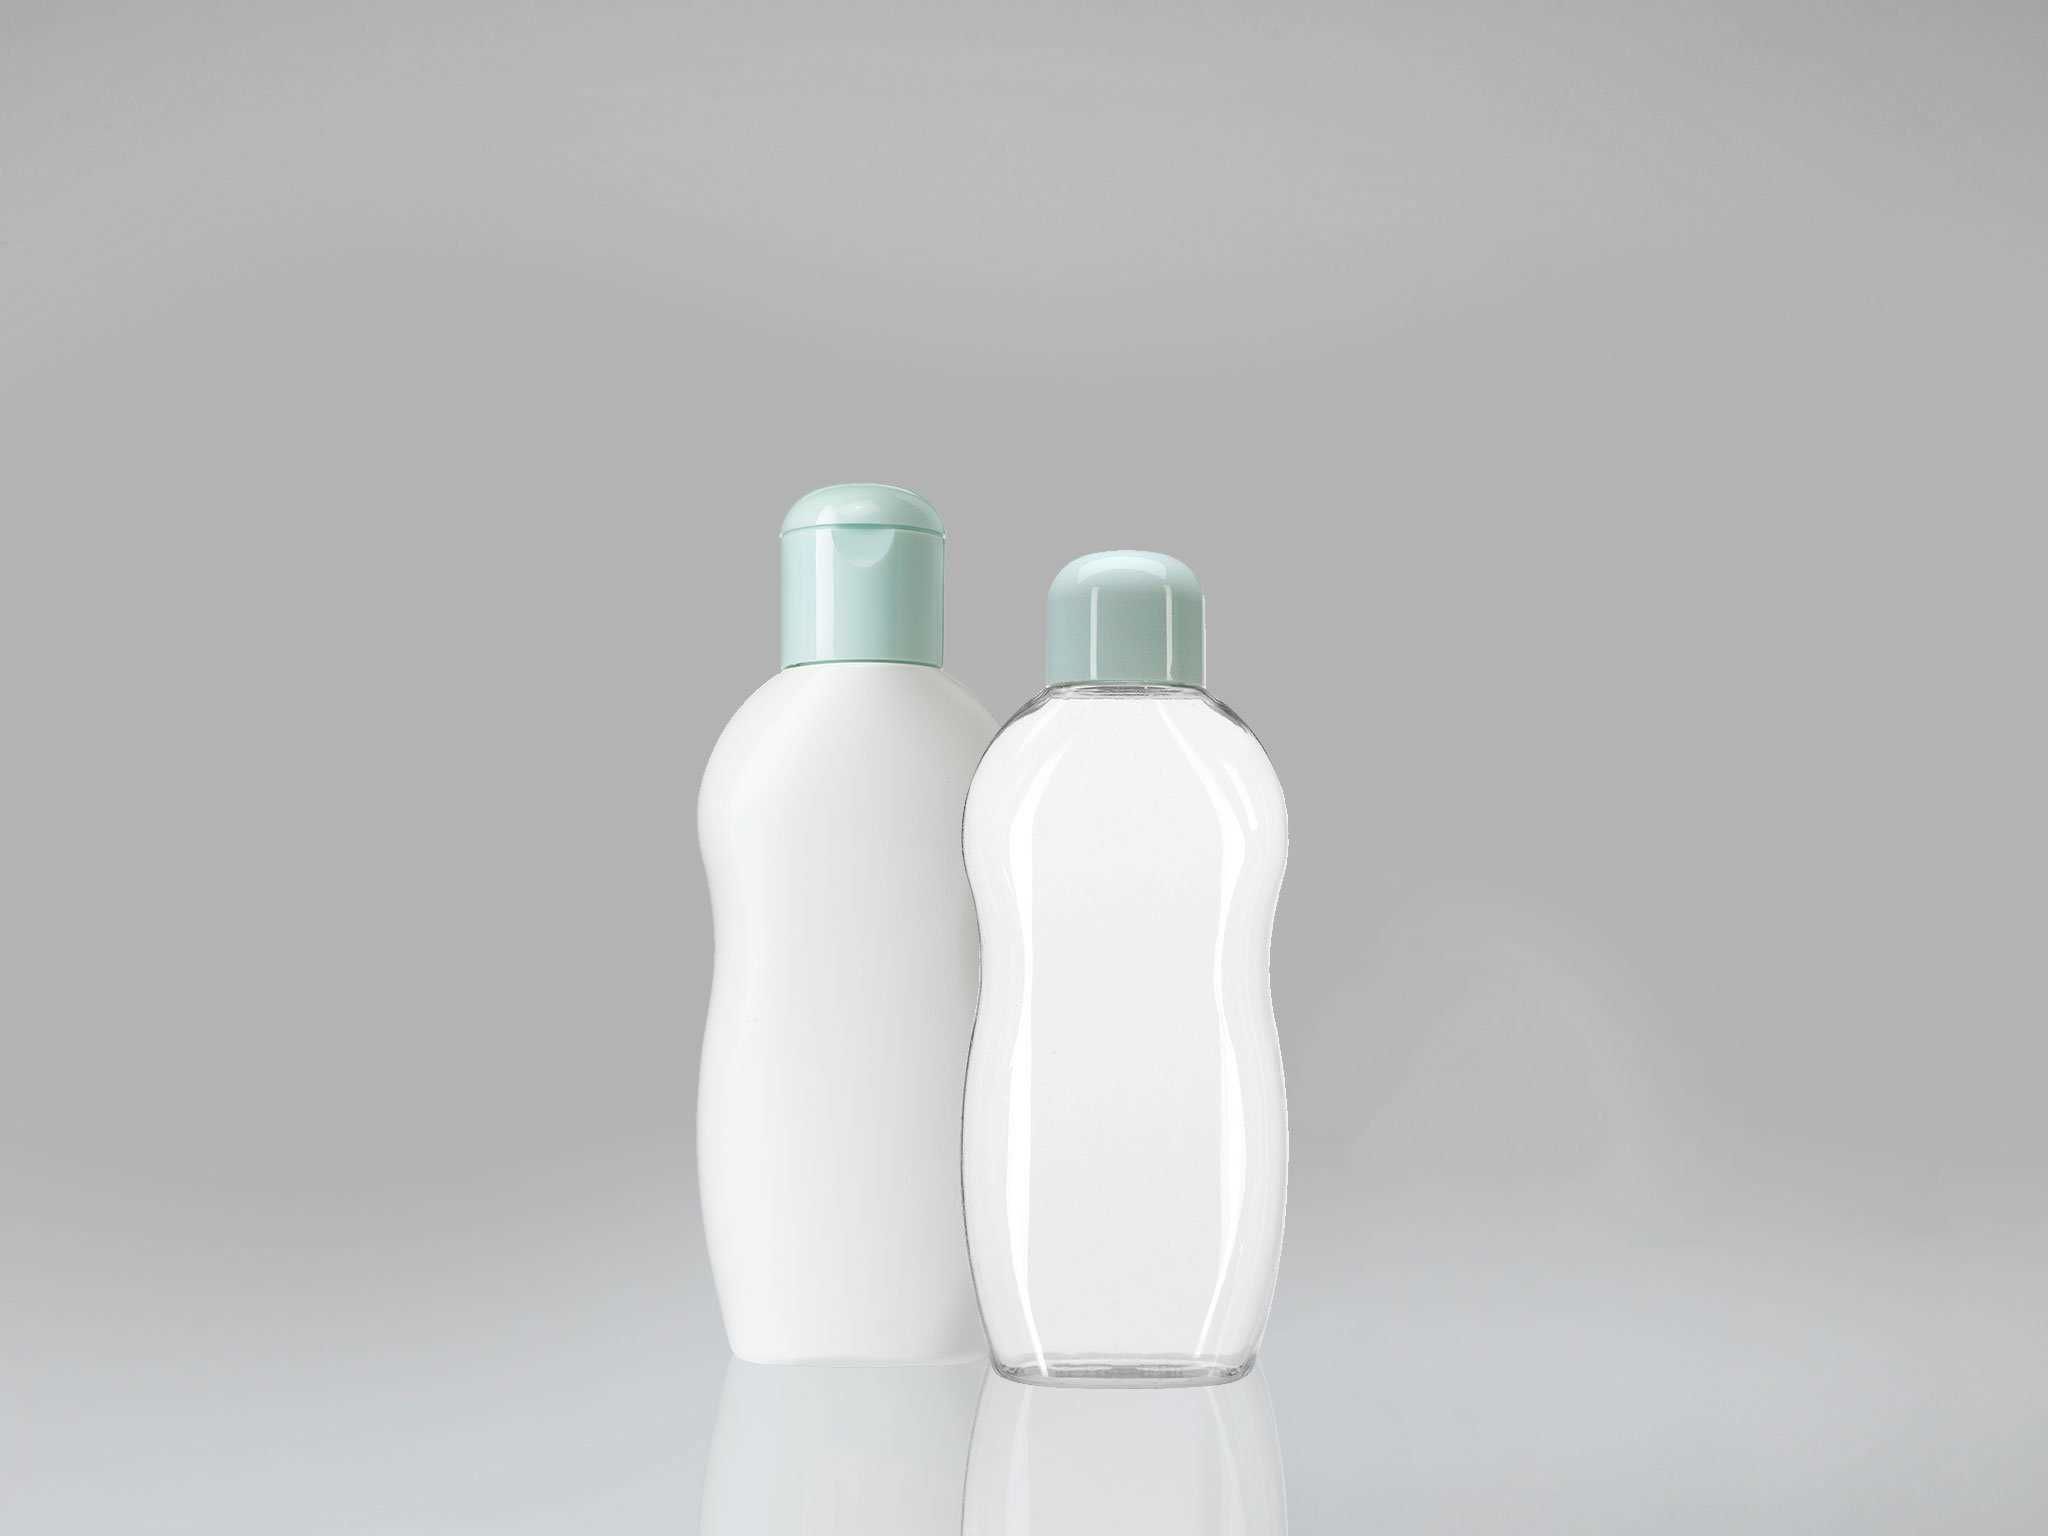 زجاجات بلاستيكية